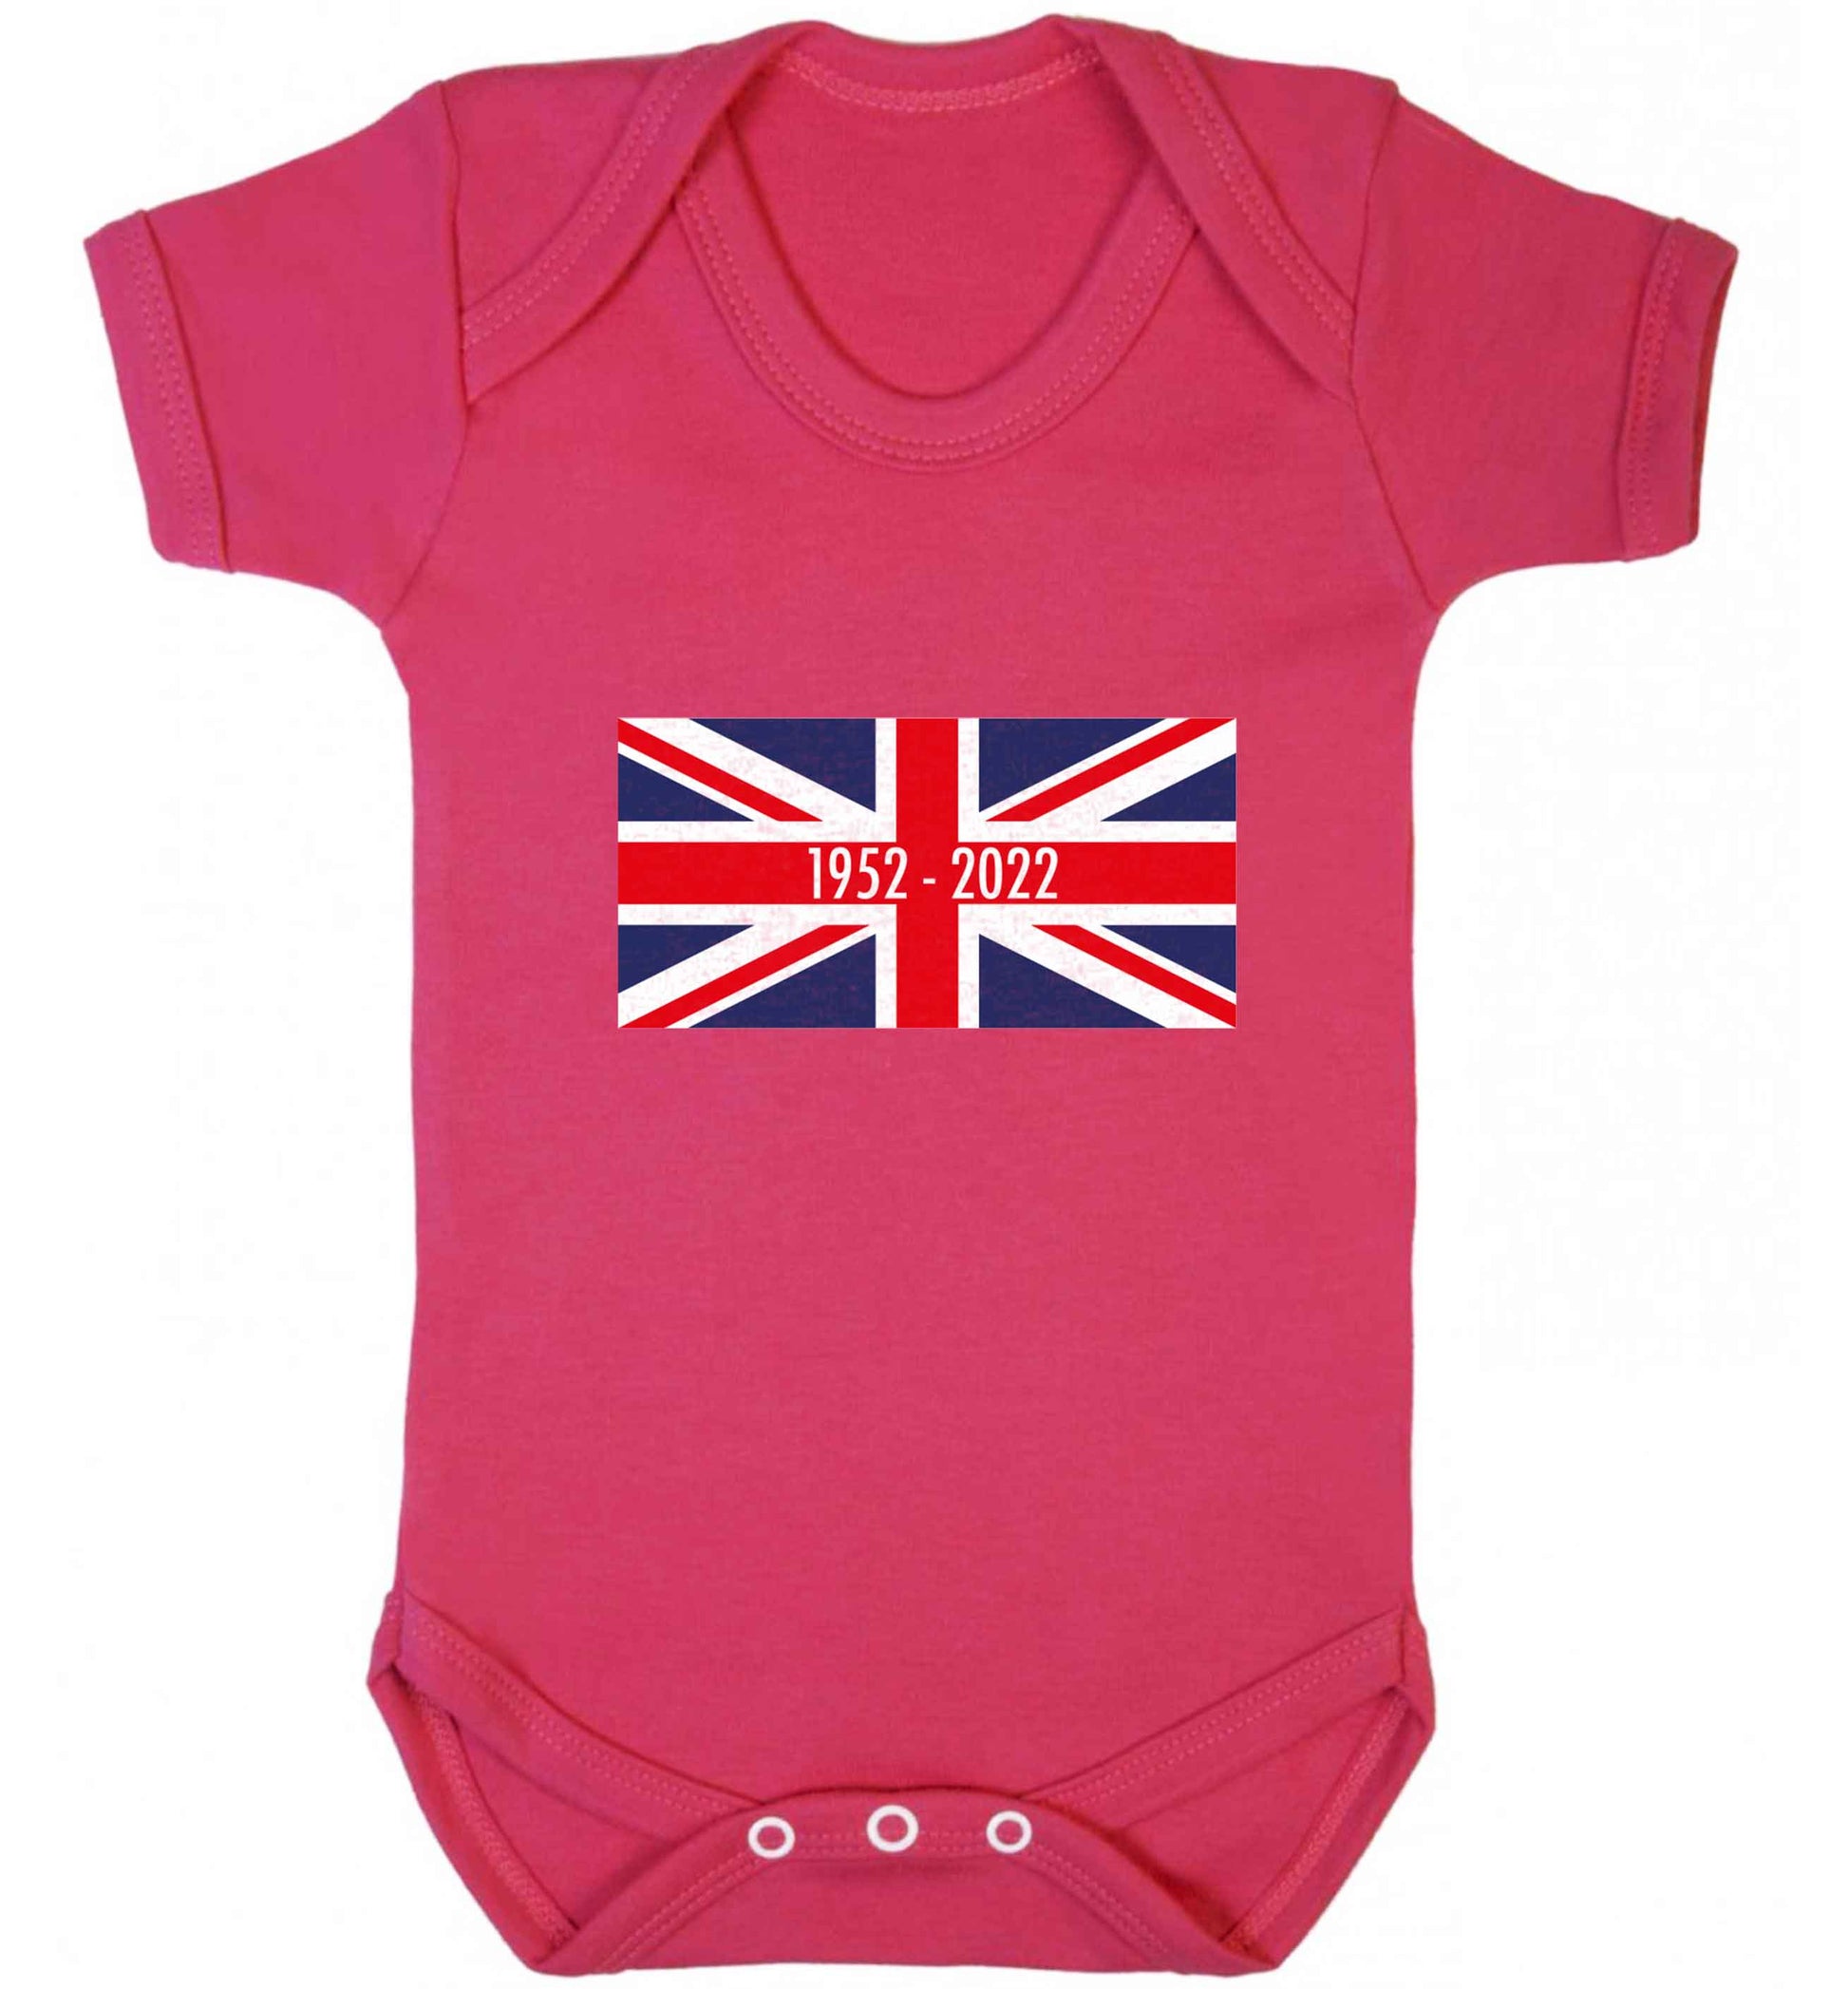 British flag Queens jubilee baby vest dark pink 18-24 months